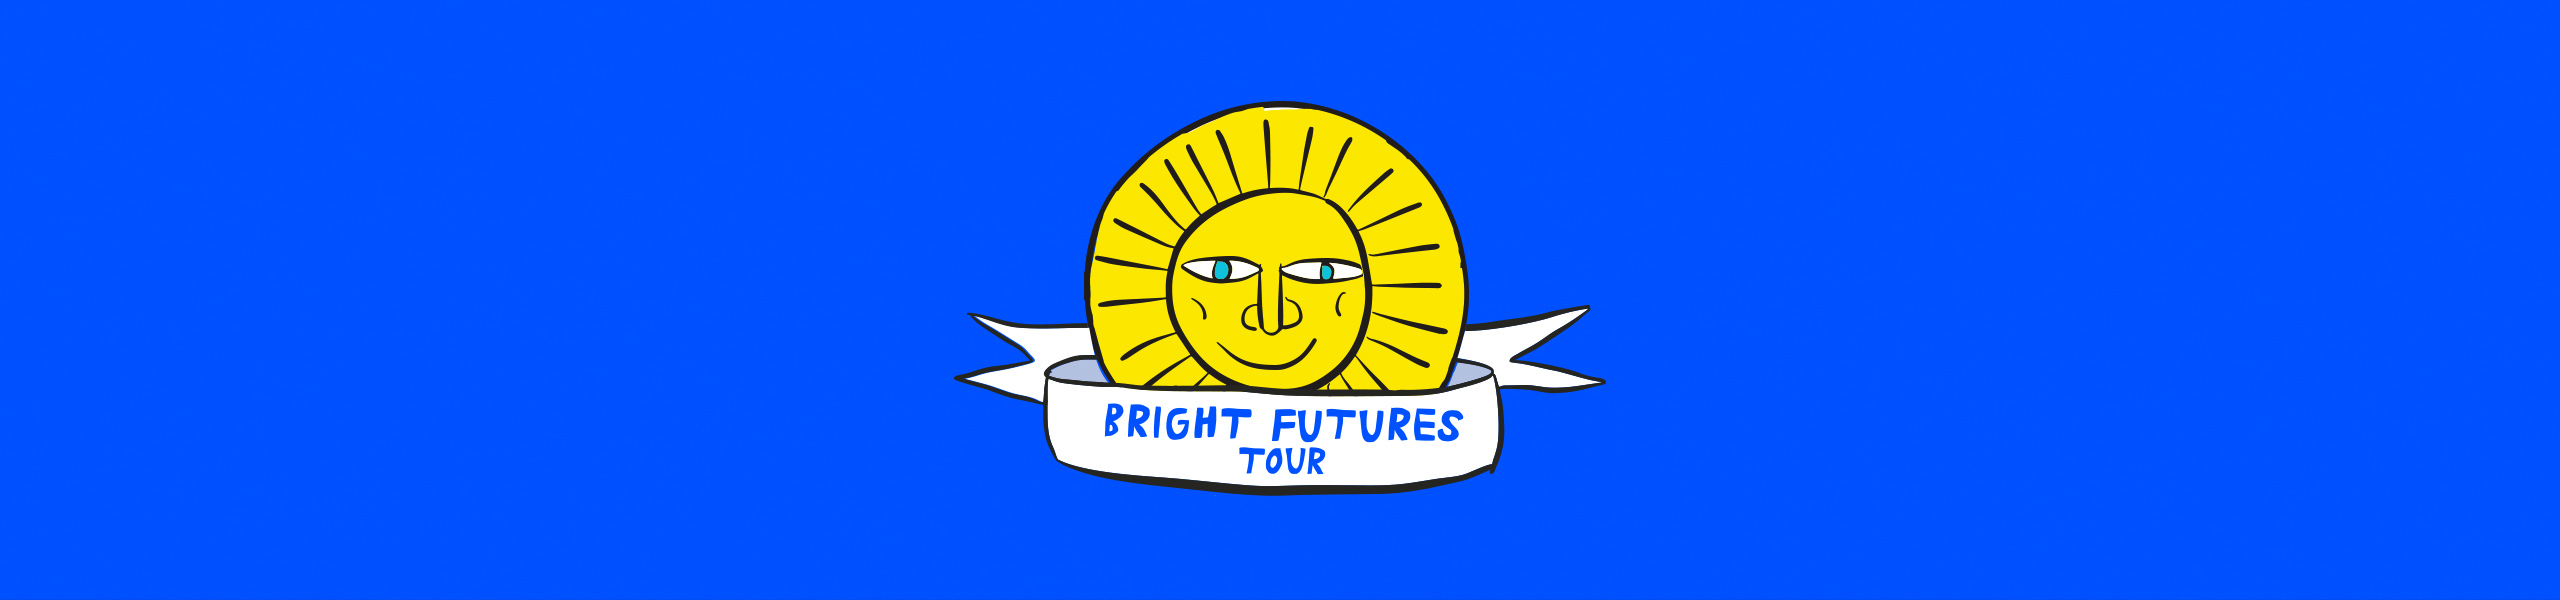 Bright Futures tour